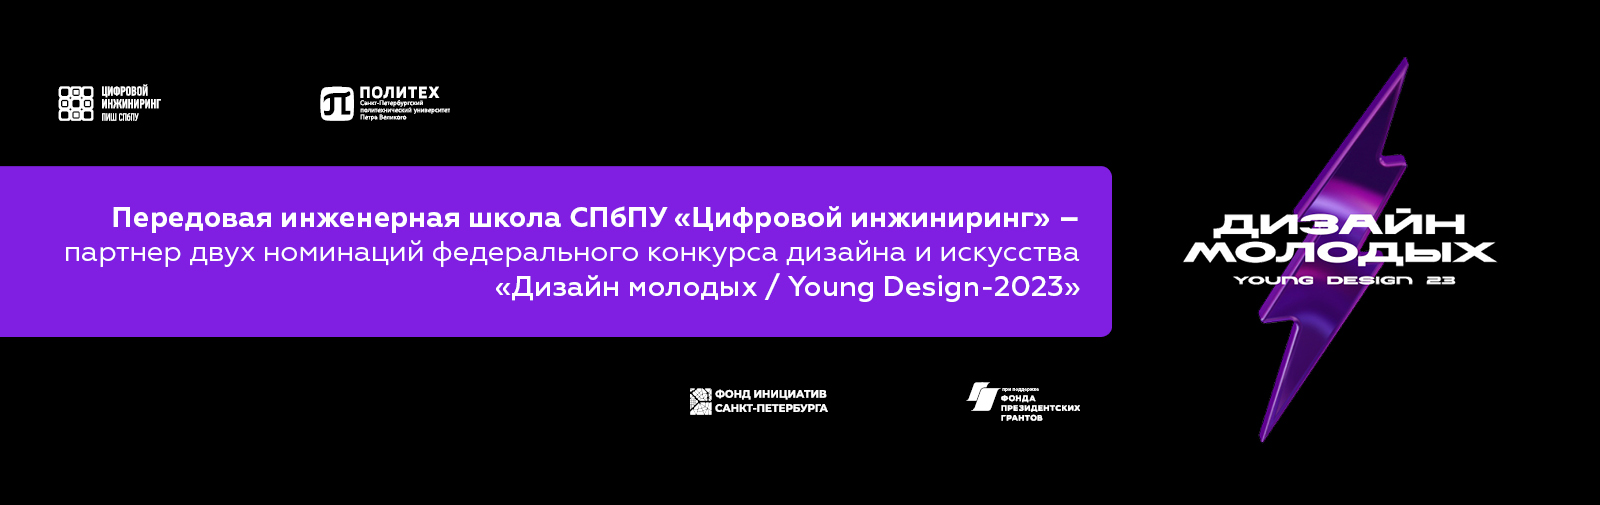 ПИШ СПбПУ «Цифровой инжиниринг» выступила партнером двух номинаций федерального конкурса дизайна и искусства «Дизайн молодых / Young Design-2023»